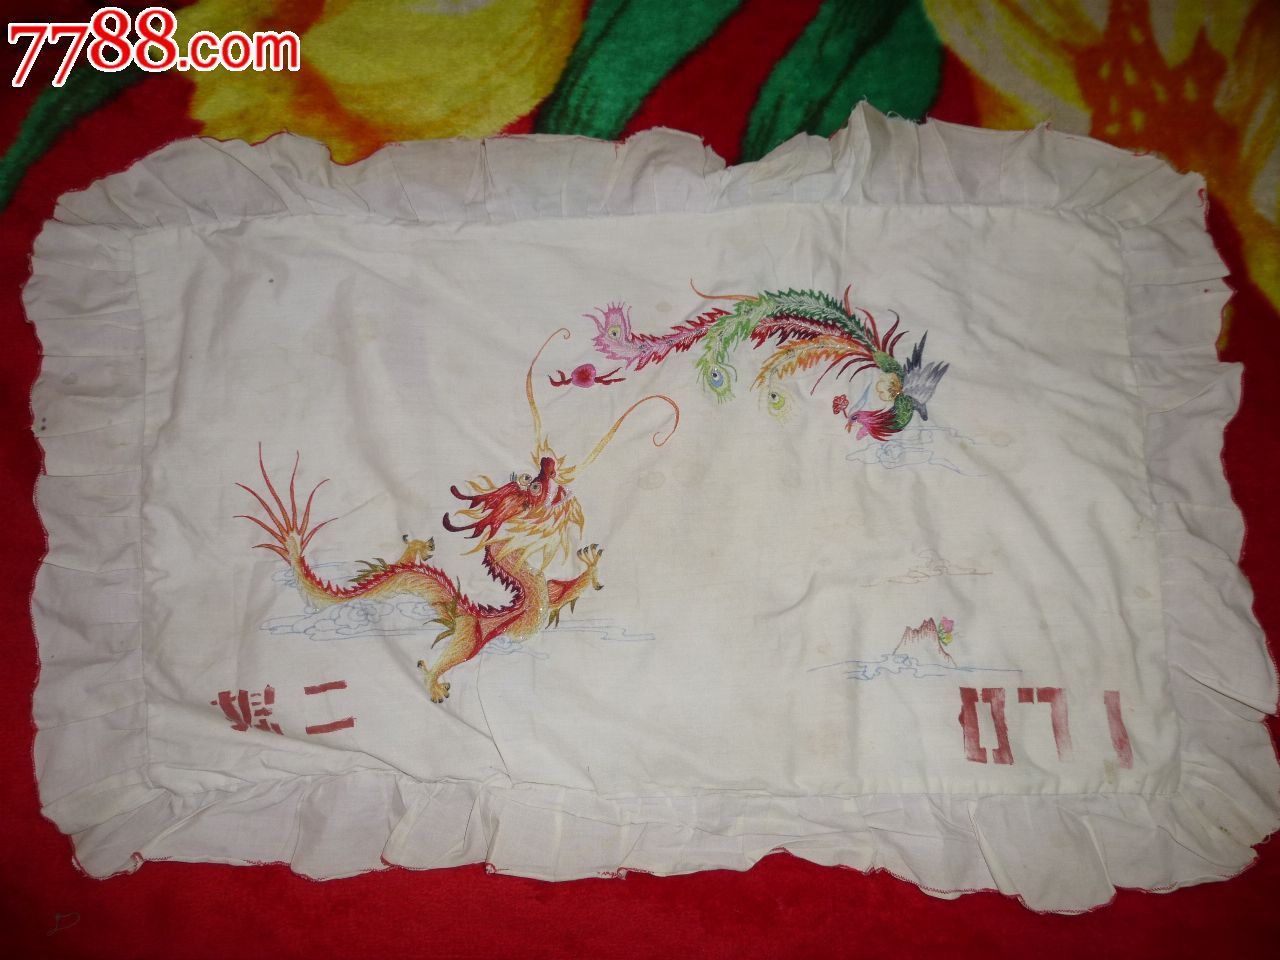 70年代老式印花枕巾图片